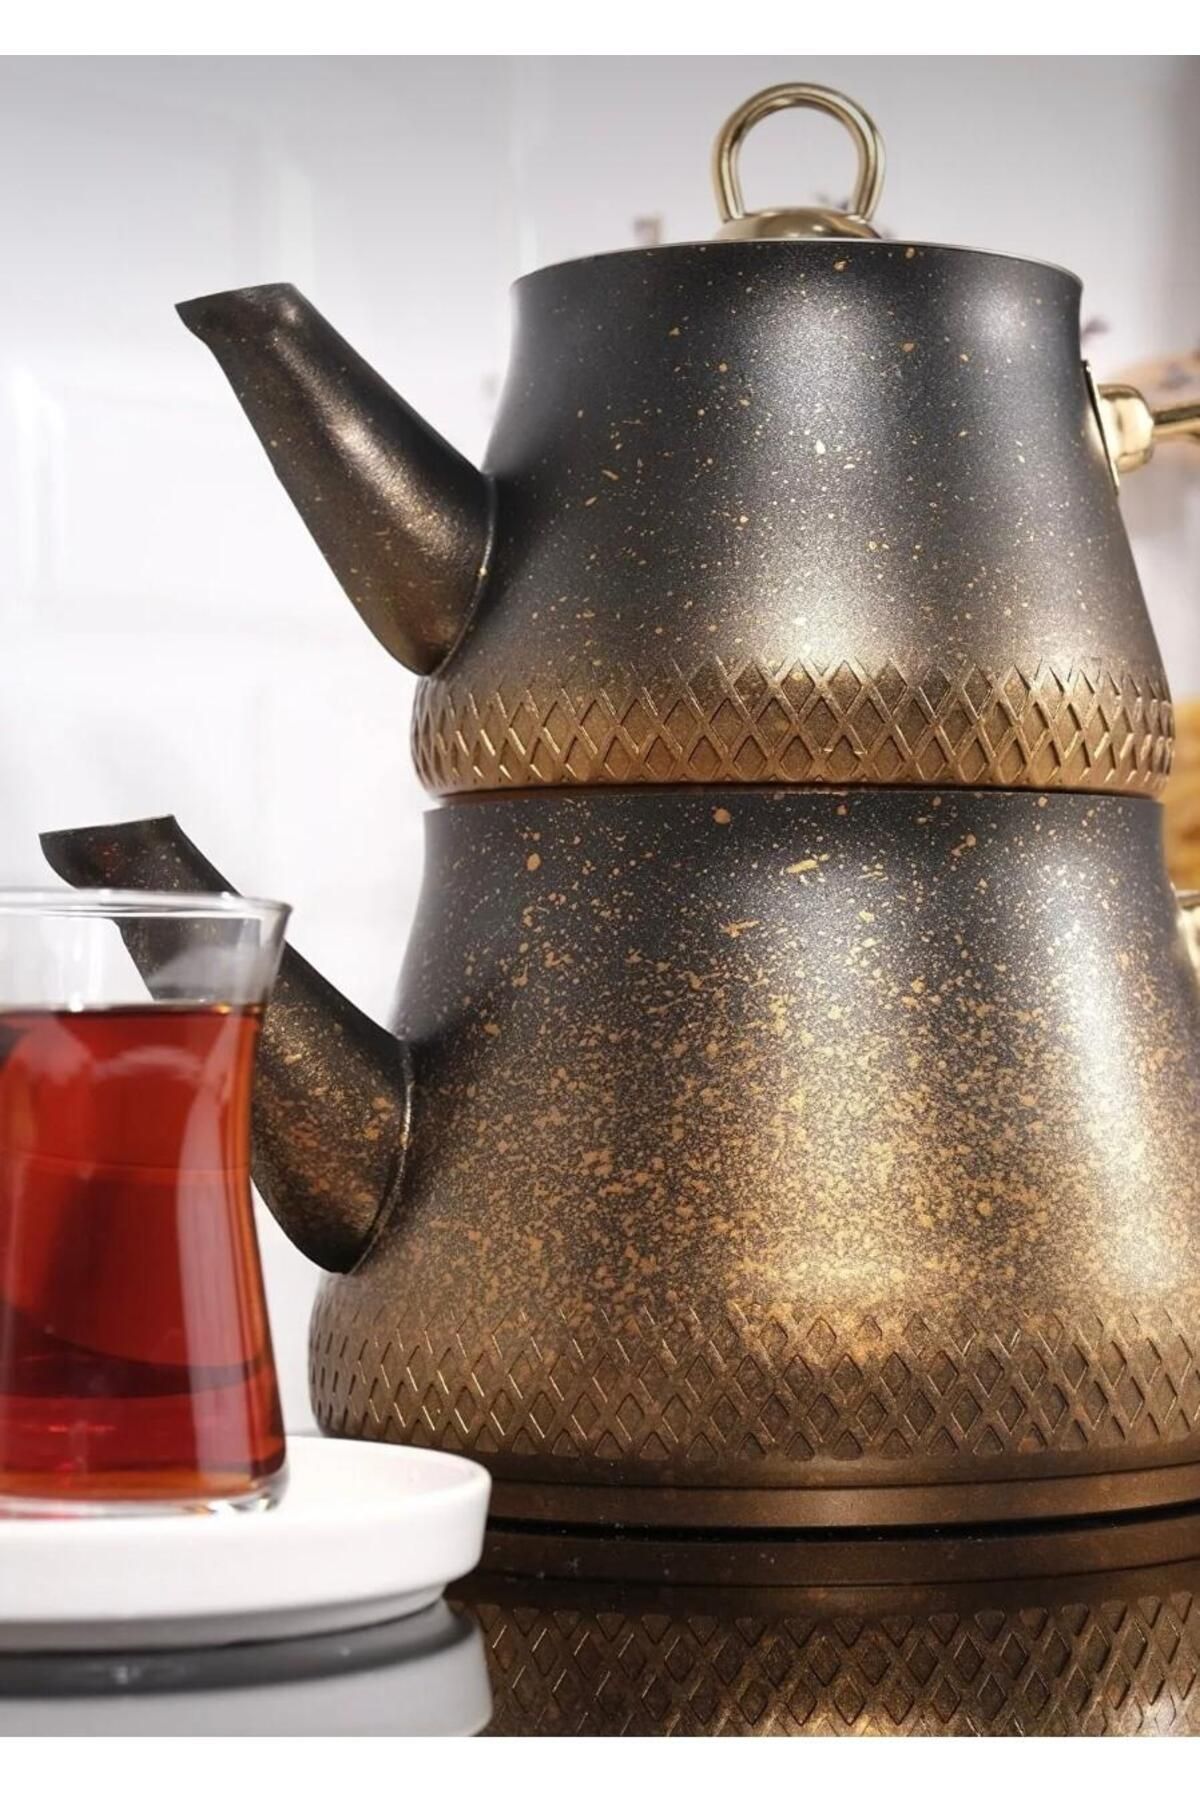 arnisa Granit Aile Boyu Büyük Çaydanlık Takımı Altın Kulplu Çaydanlık Seti